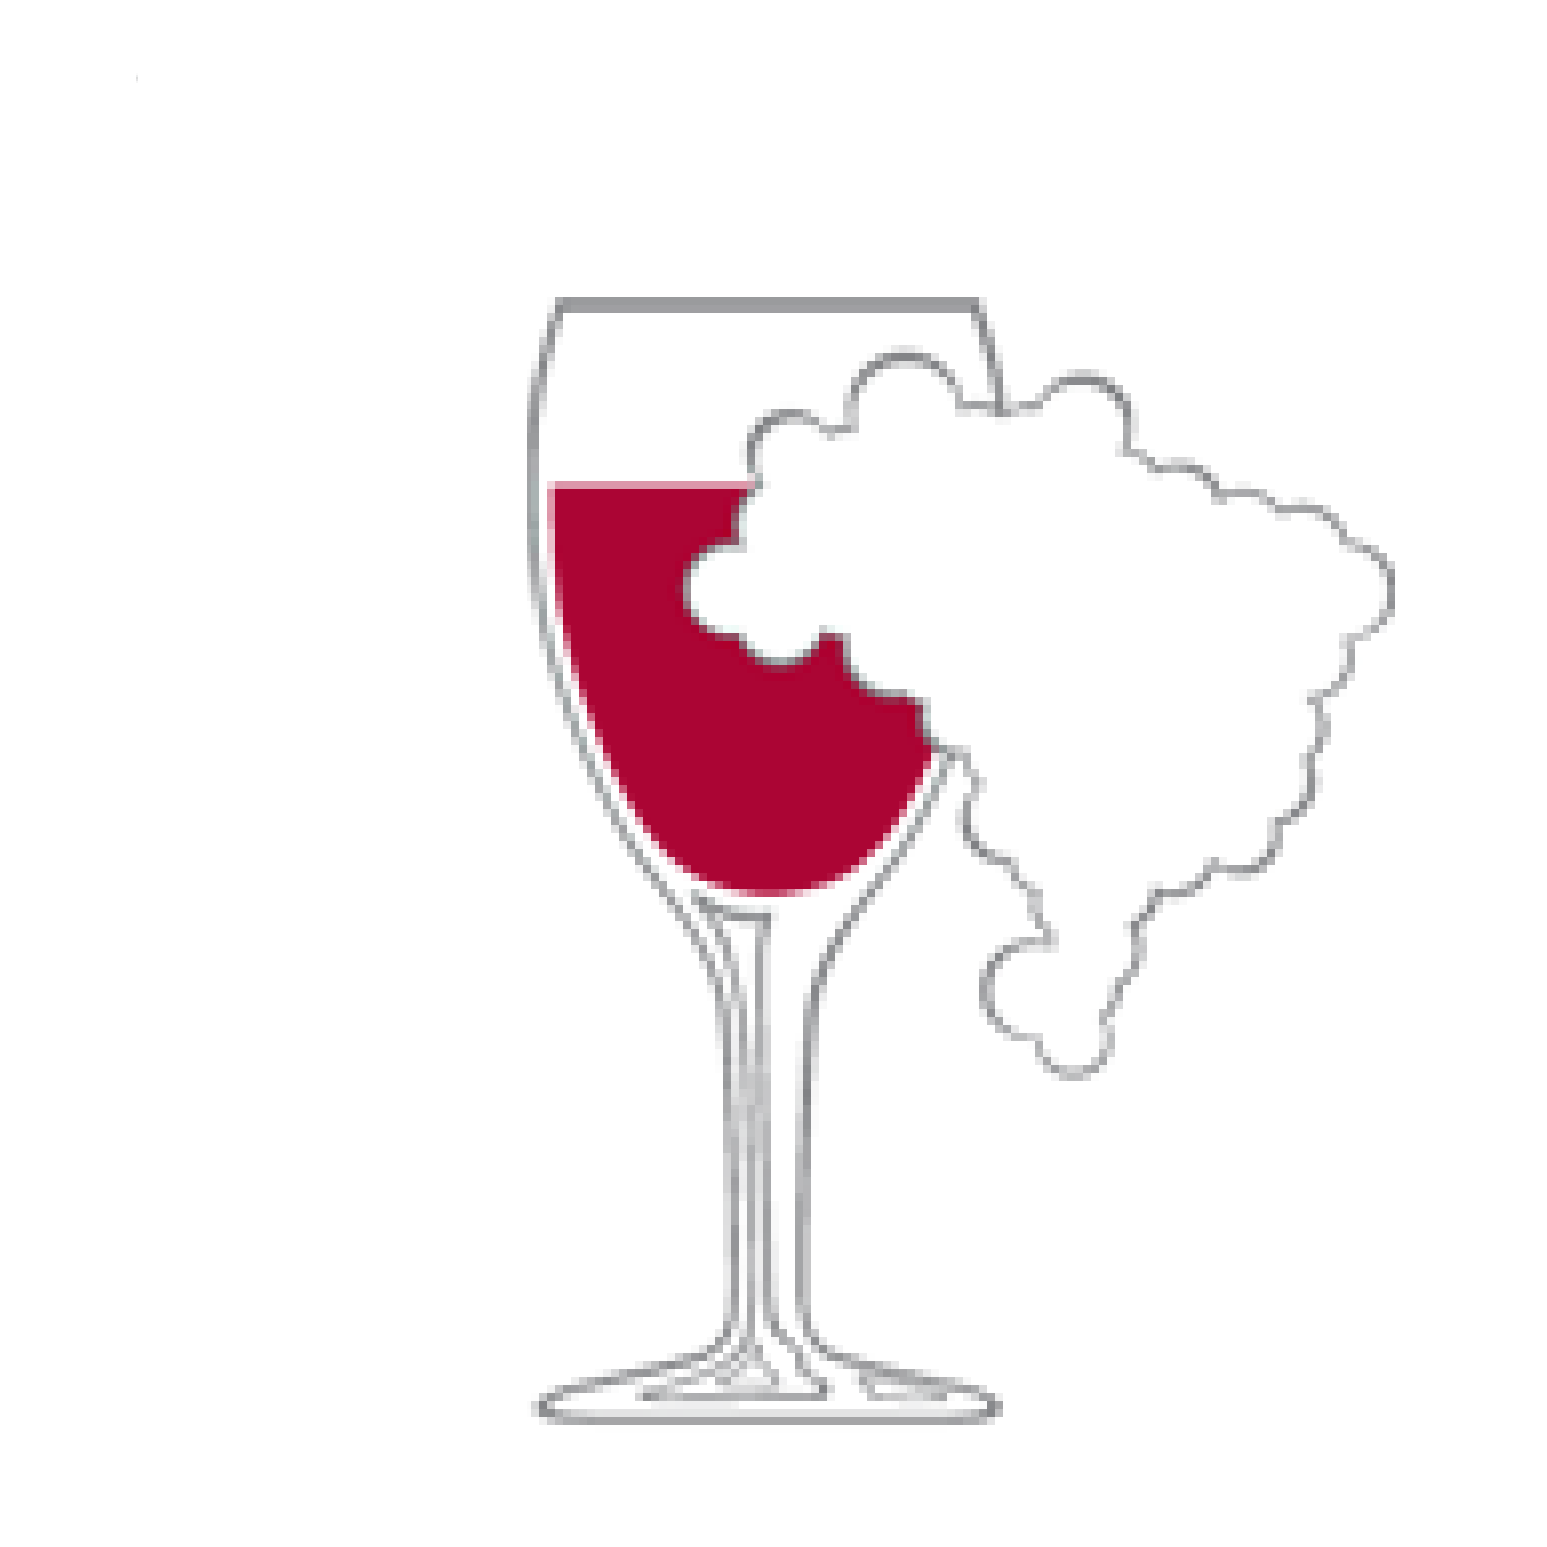 SBAV - Associação Brasileira dos Amigos do Vinho